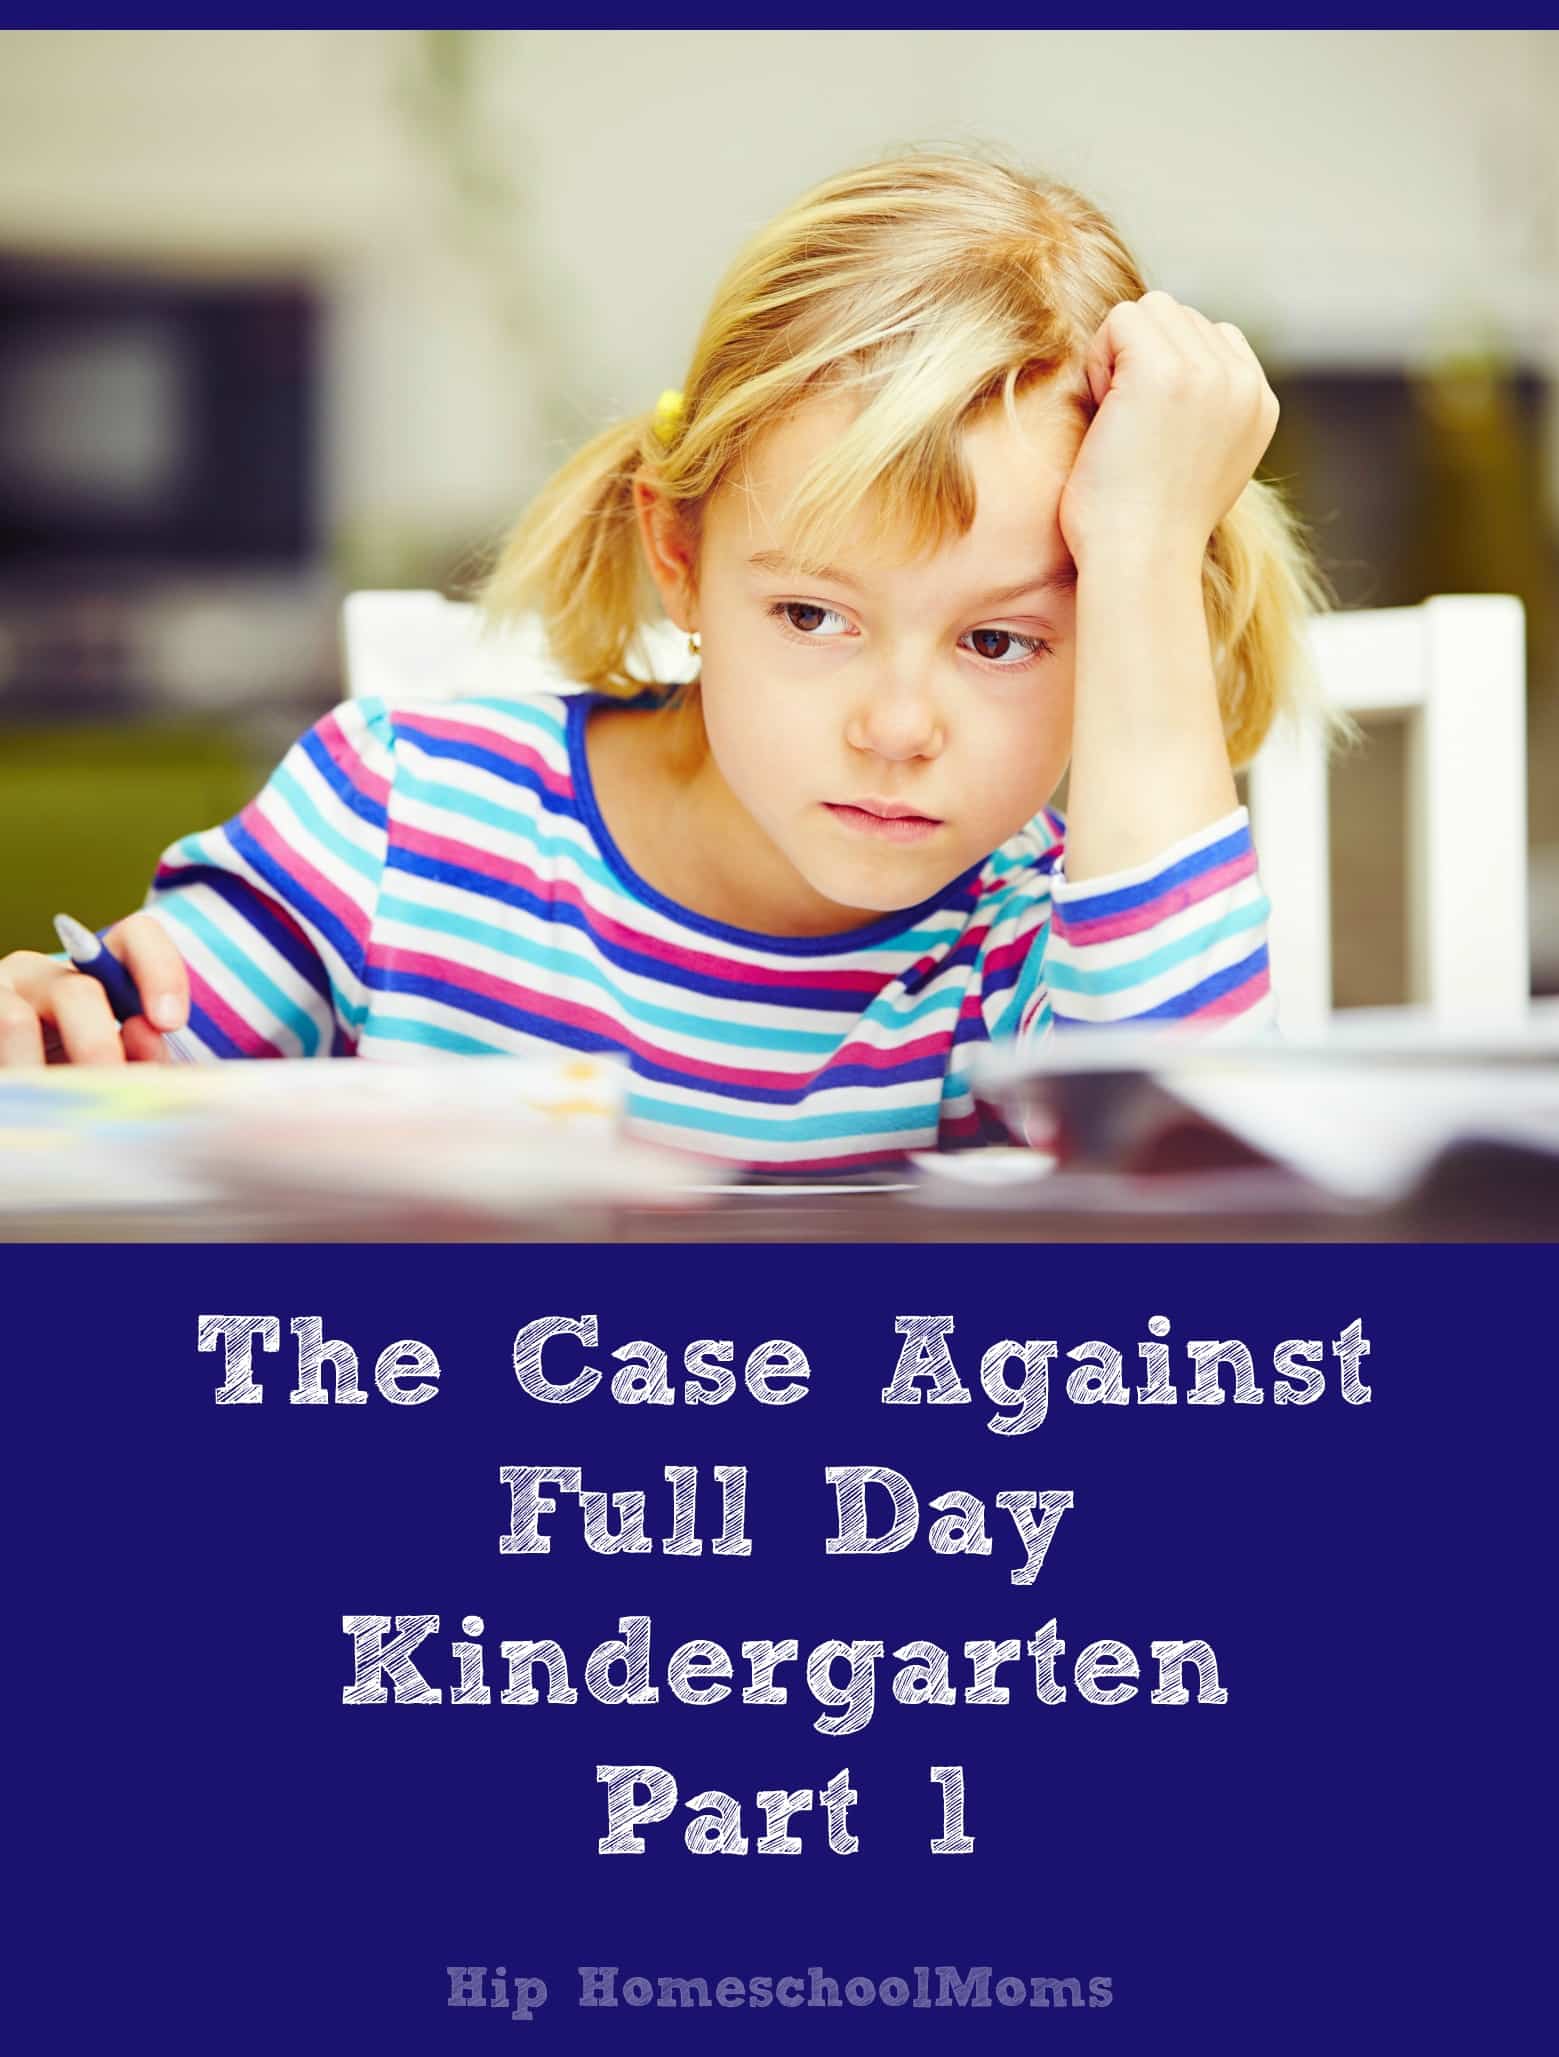 The Case Against Full Day Kindergarten: Part 1